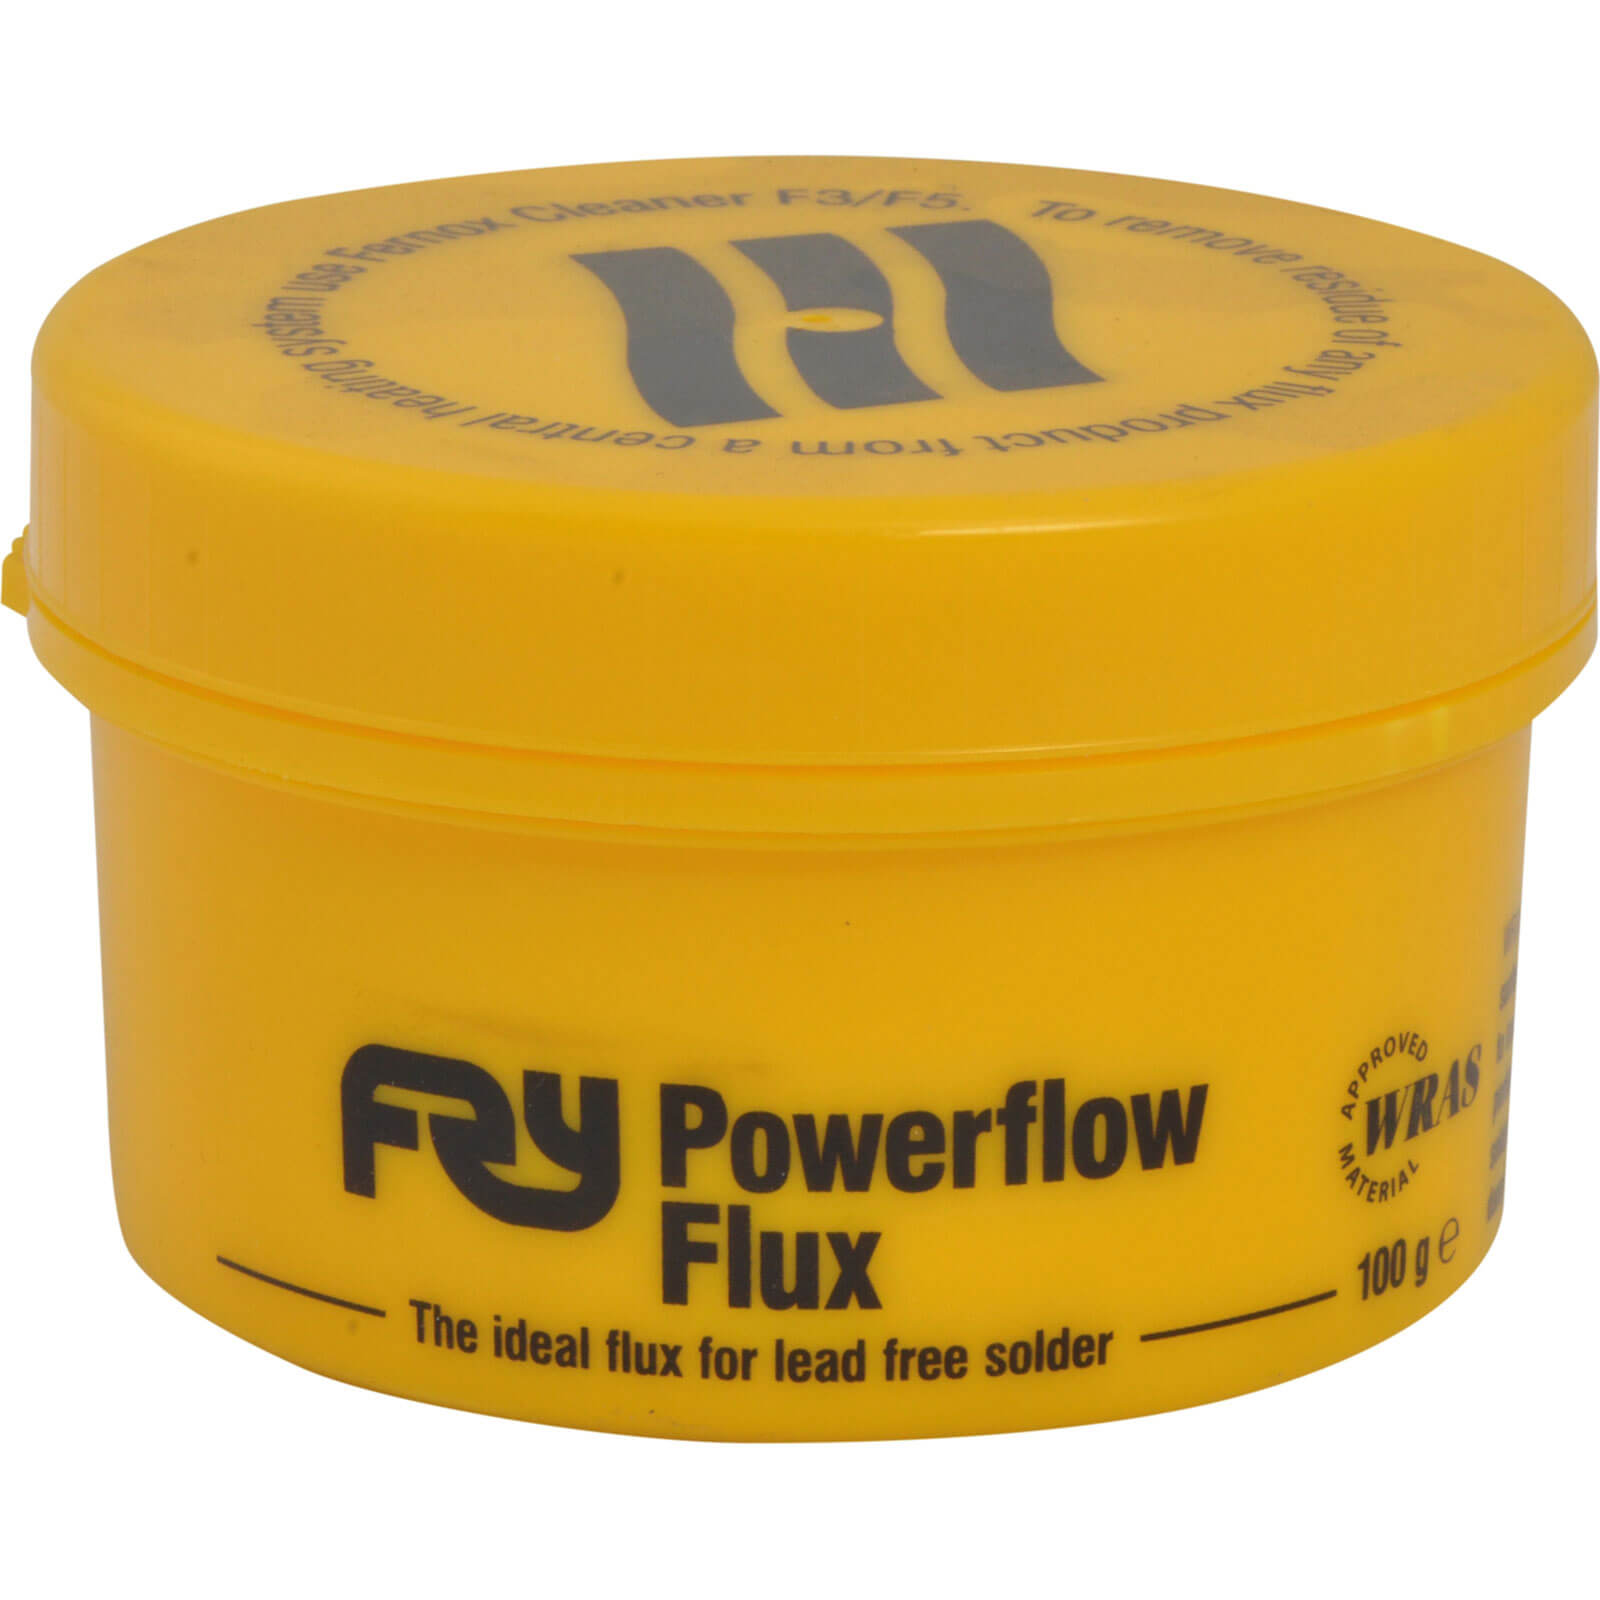 Photo of Frys Powerflow Flux 100g